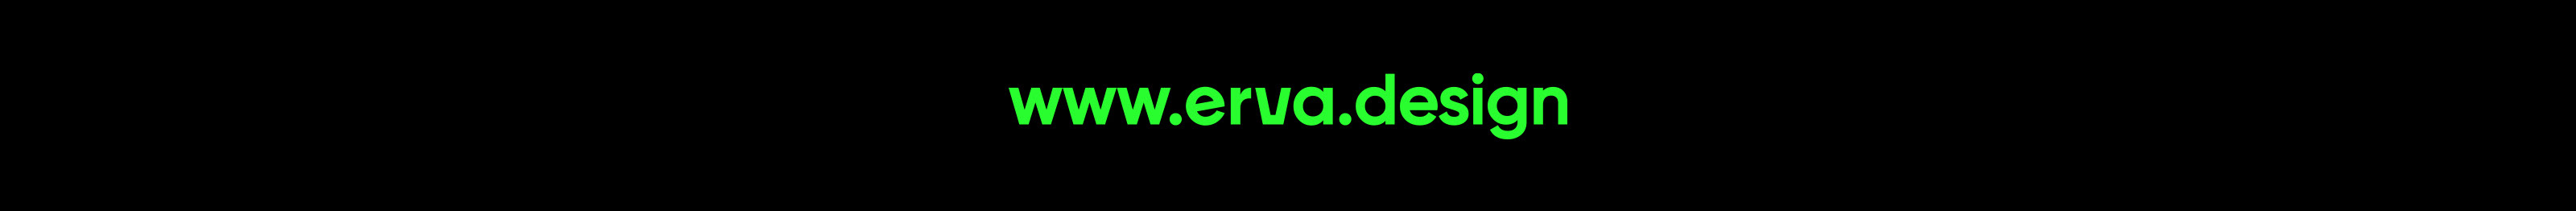 erva® design's profile banner